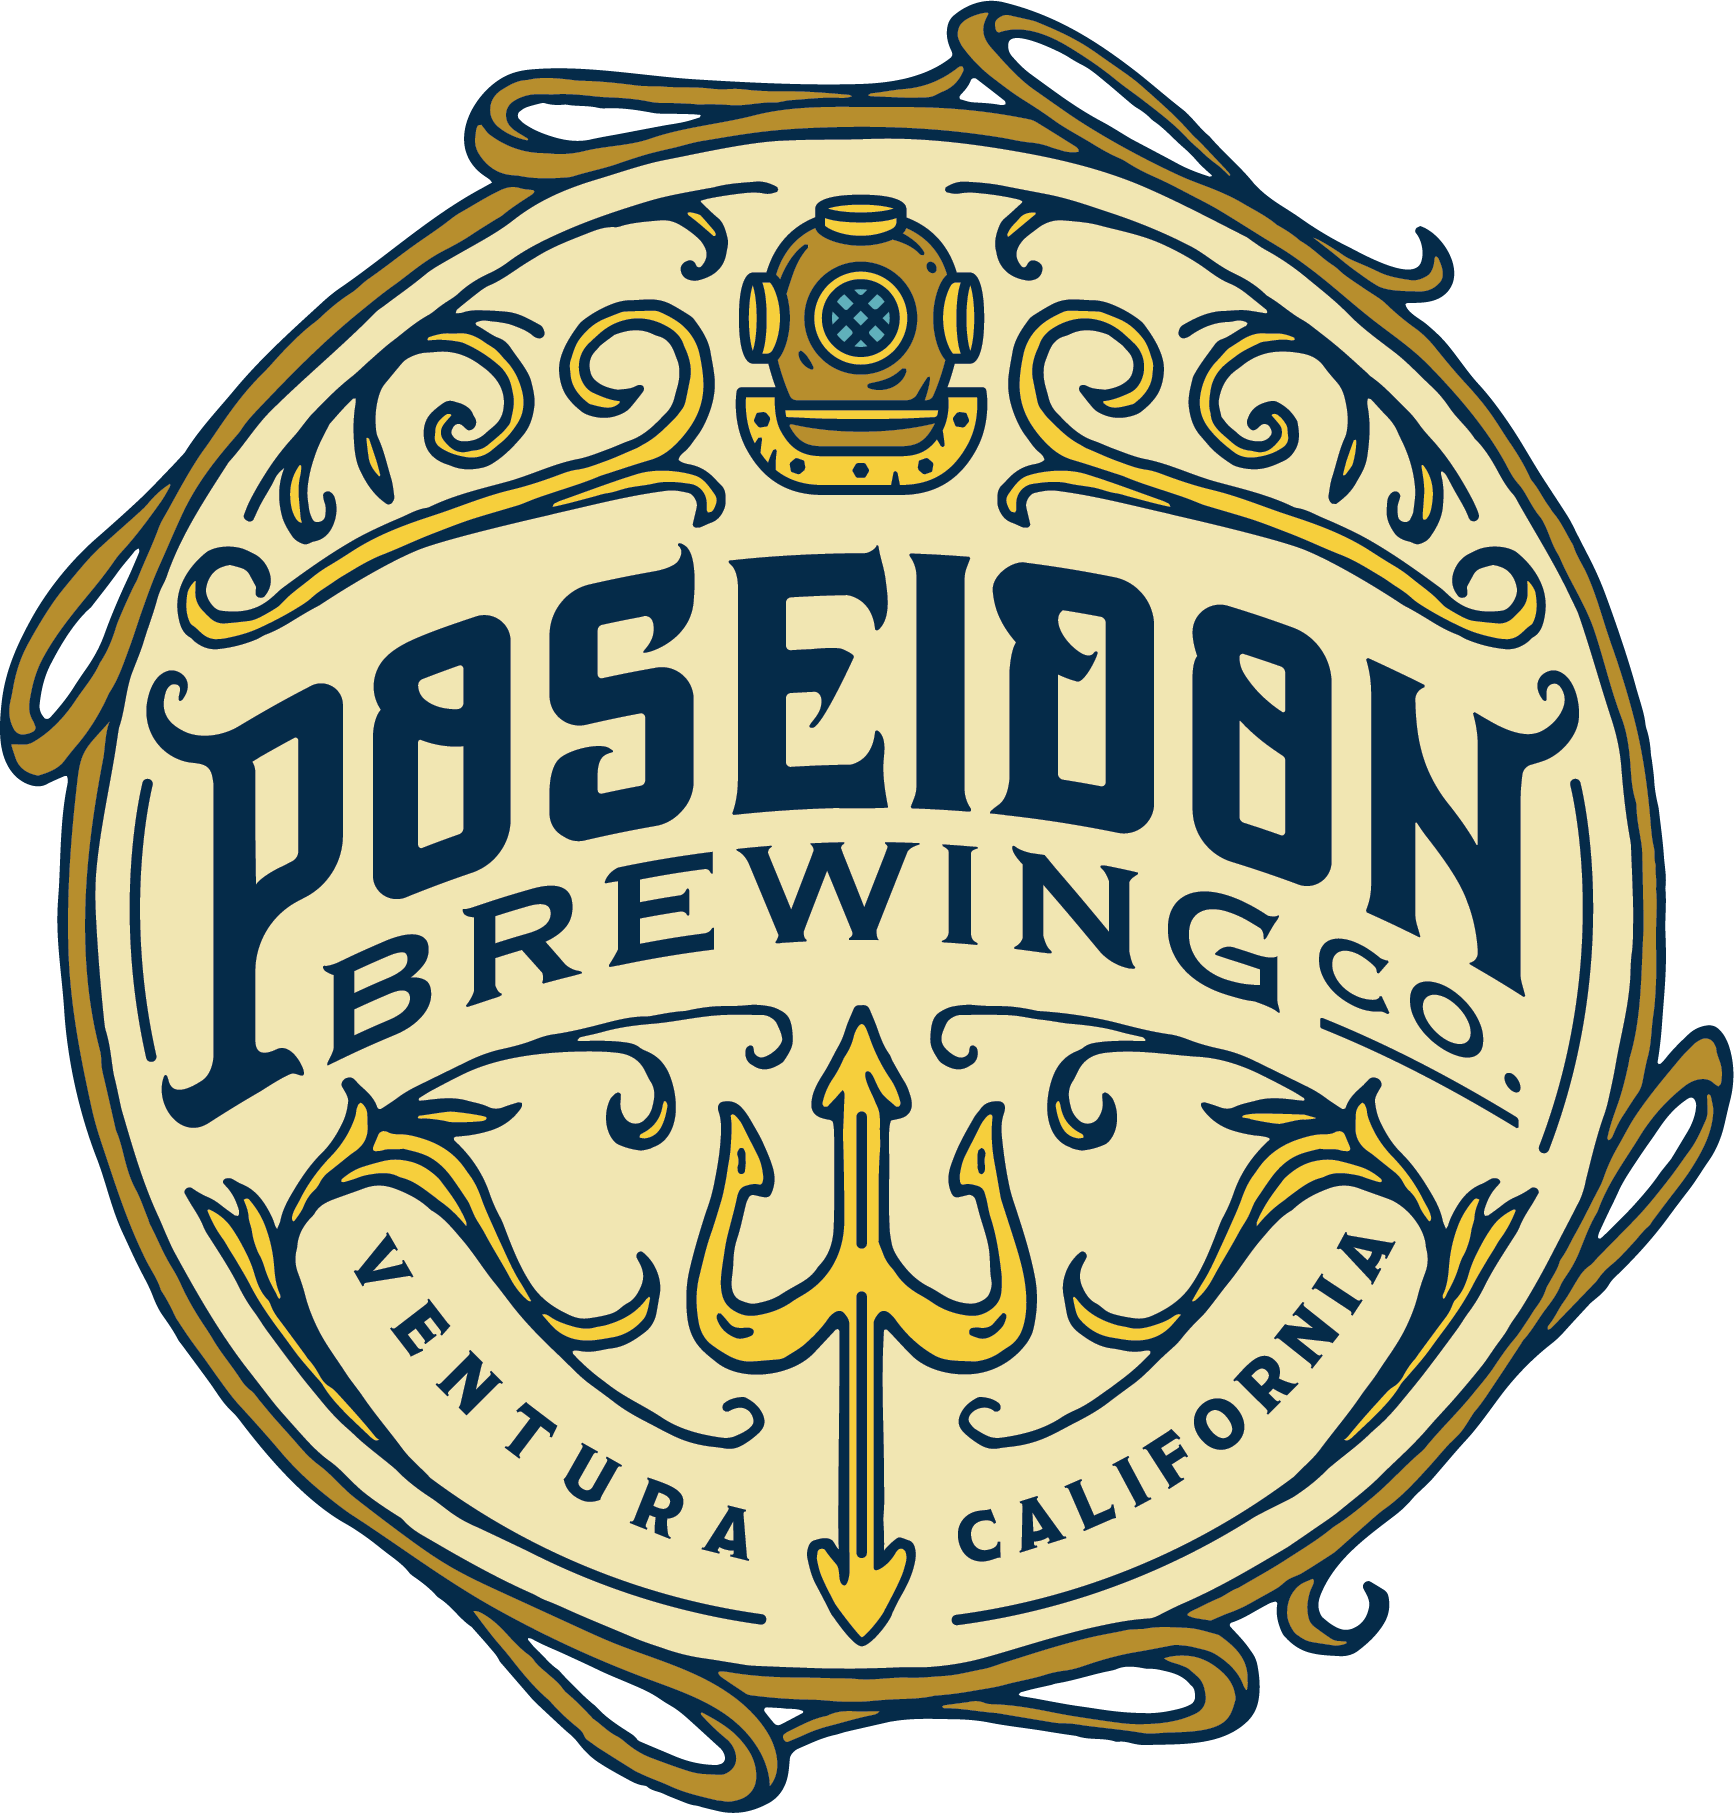 Poseidon Brewing Co. - Ventura California